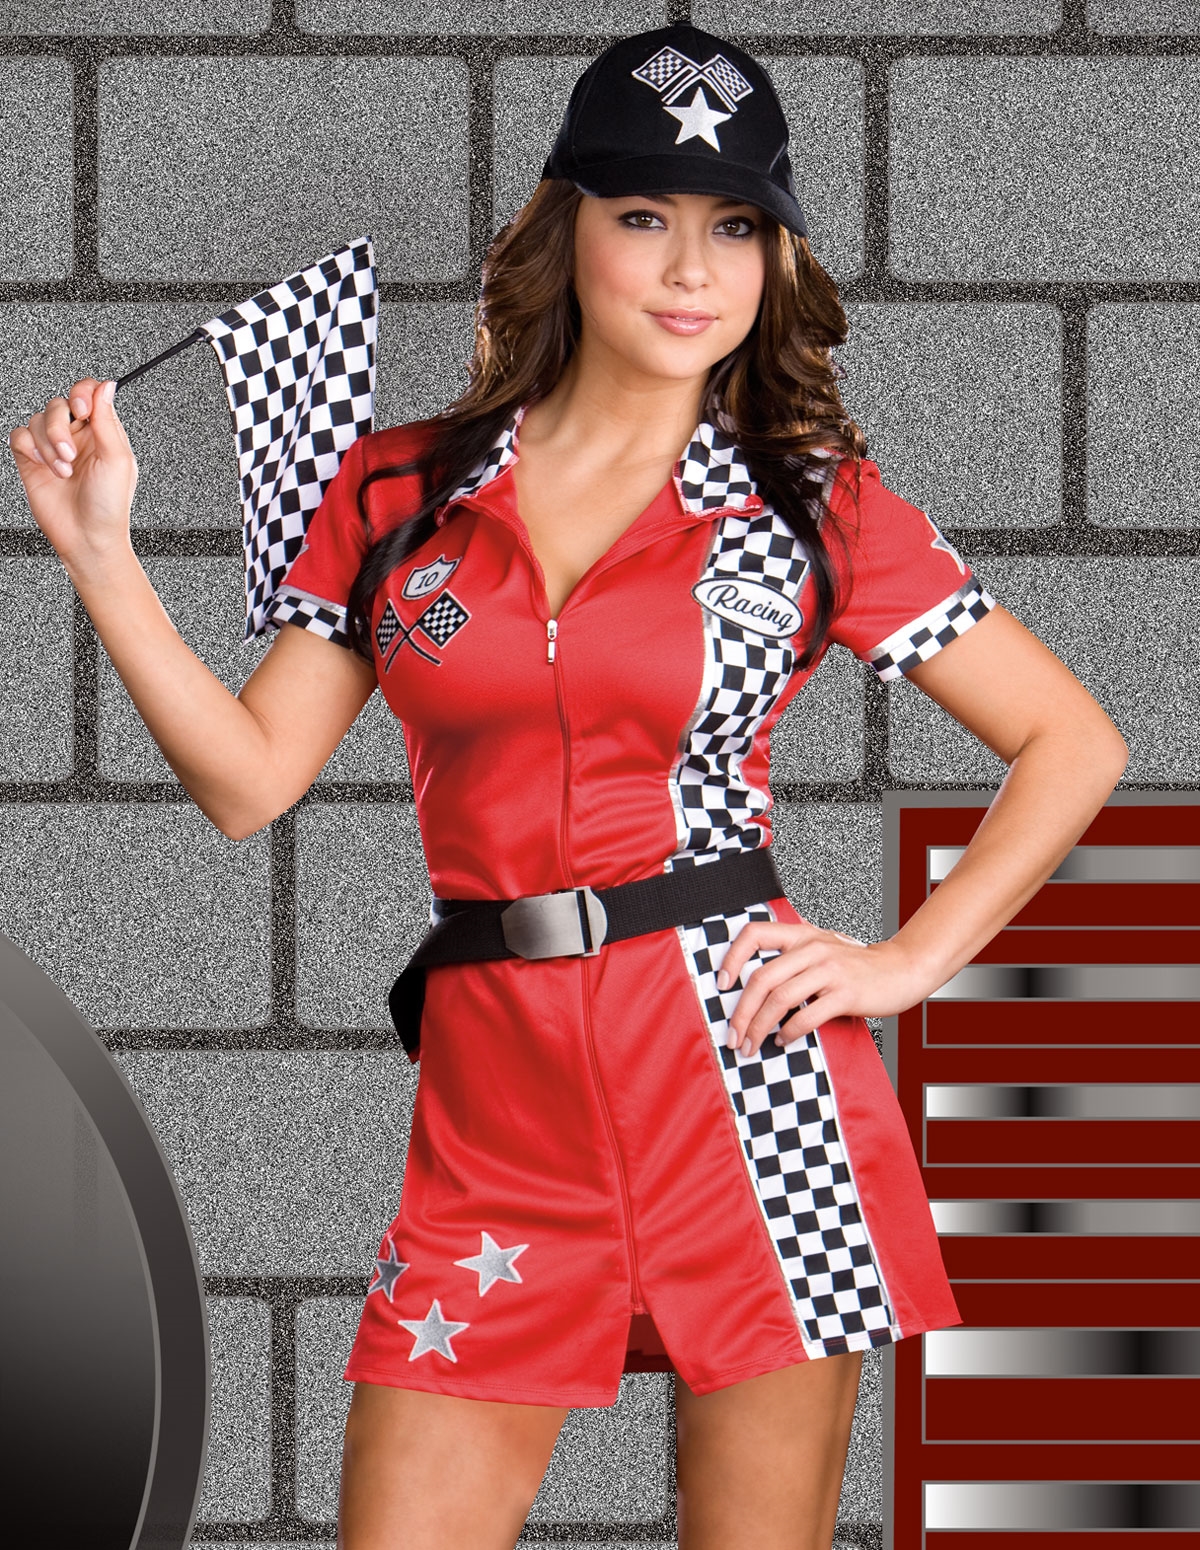 alternate image for Racer Girl Costume